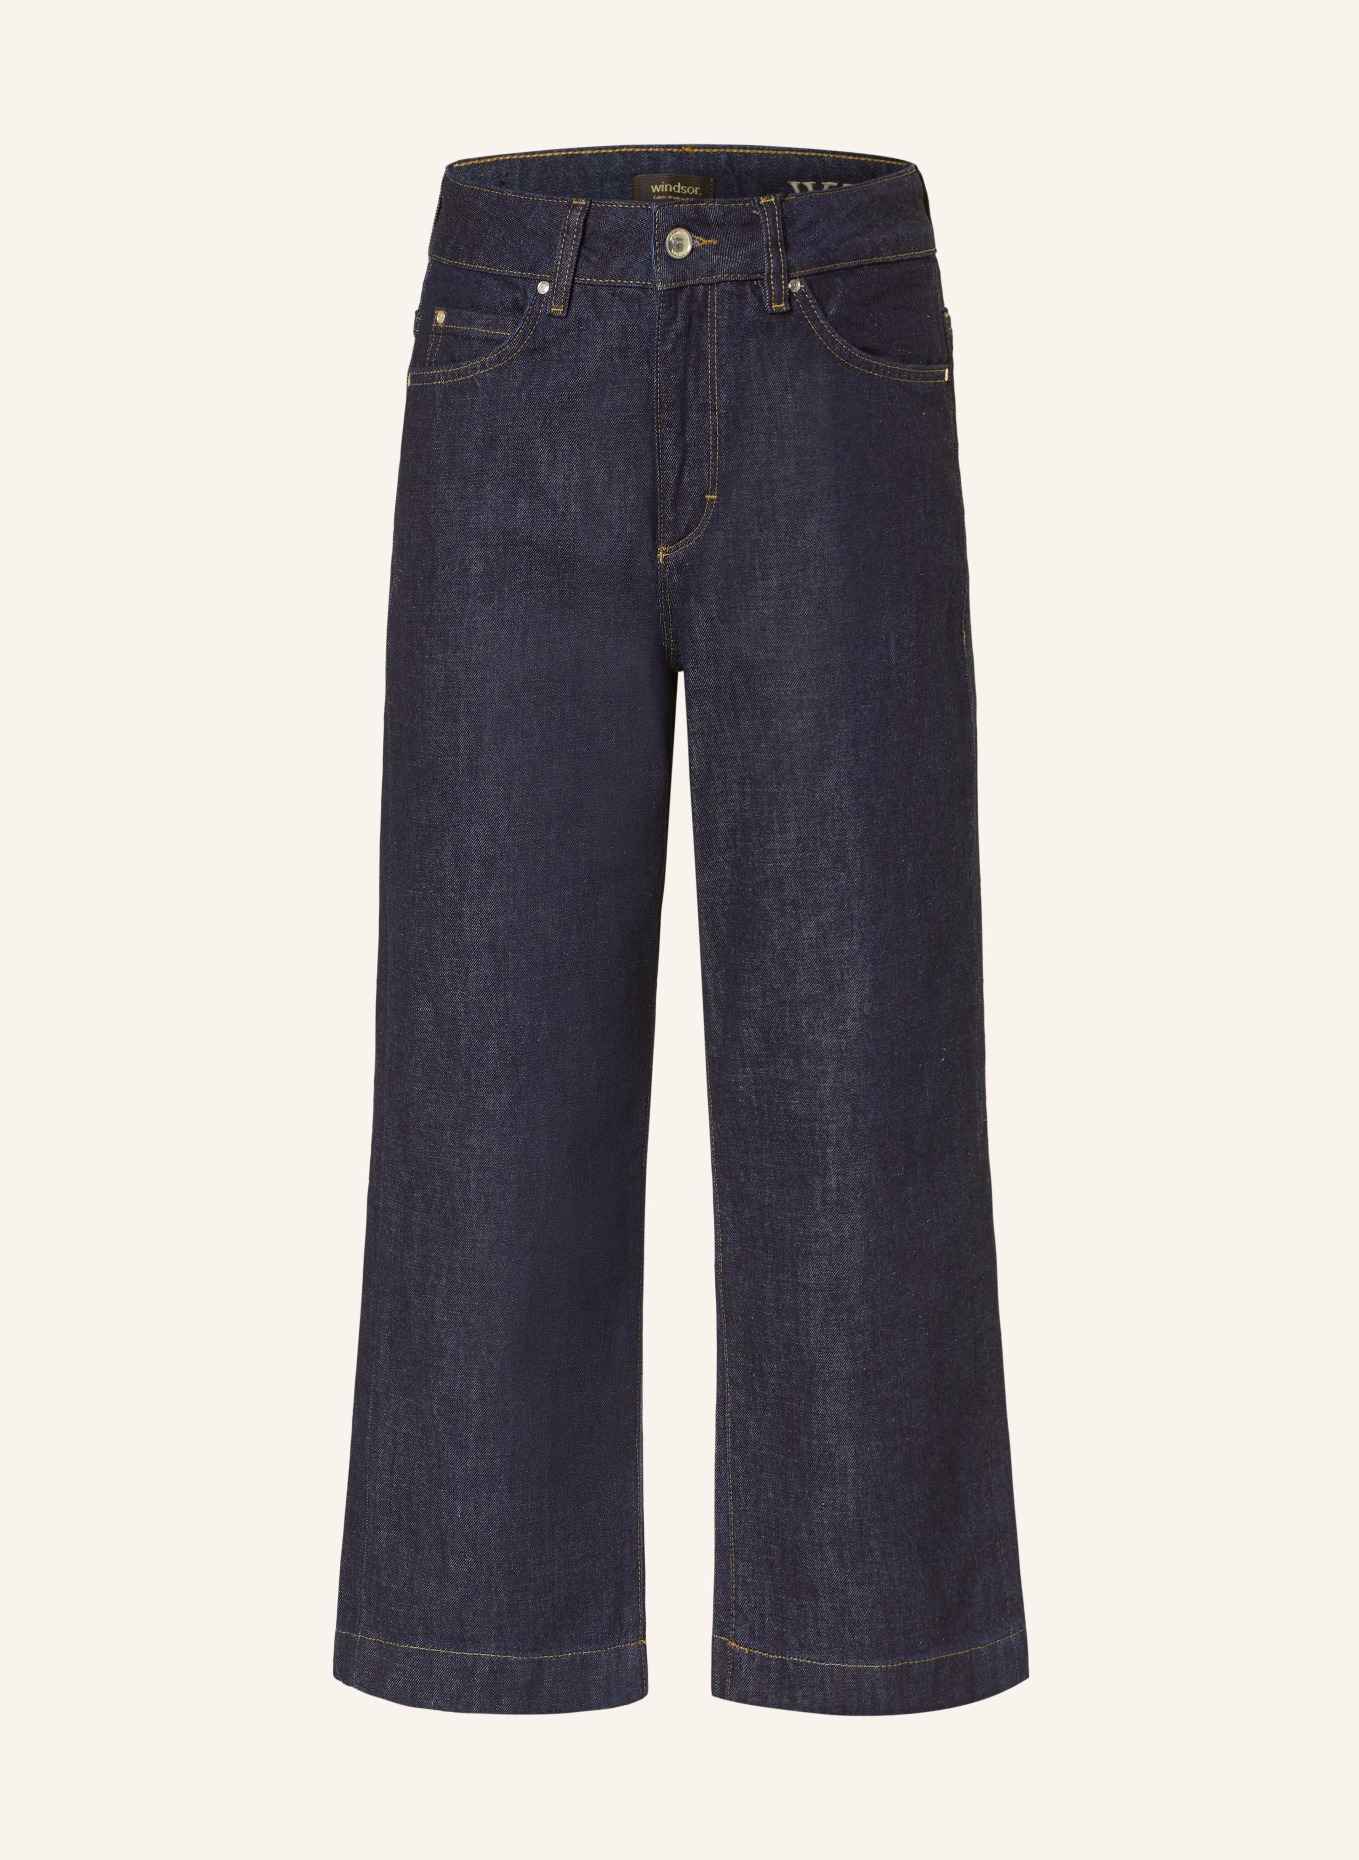 windsor. Jeans-Culotte, Farbe: 402 Dark Blue                  402 (Bild 1)